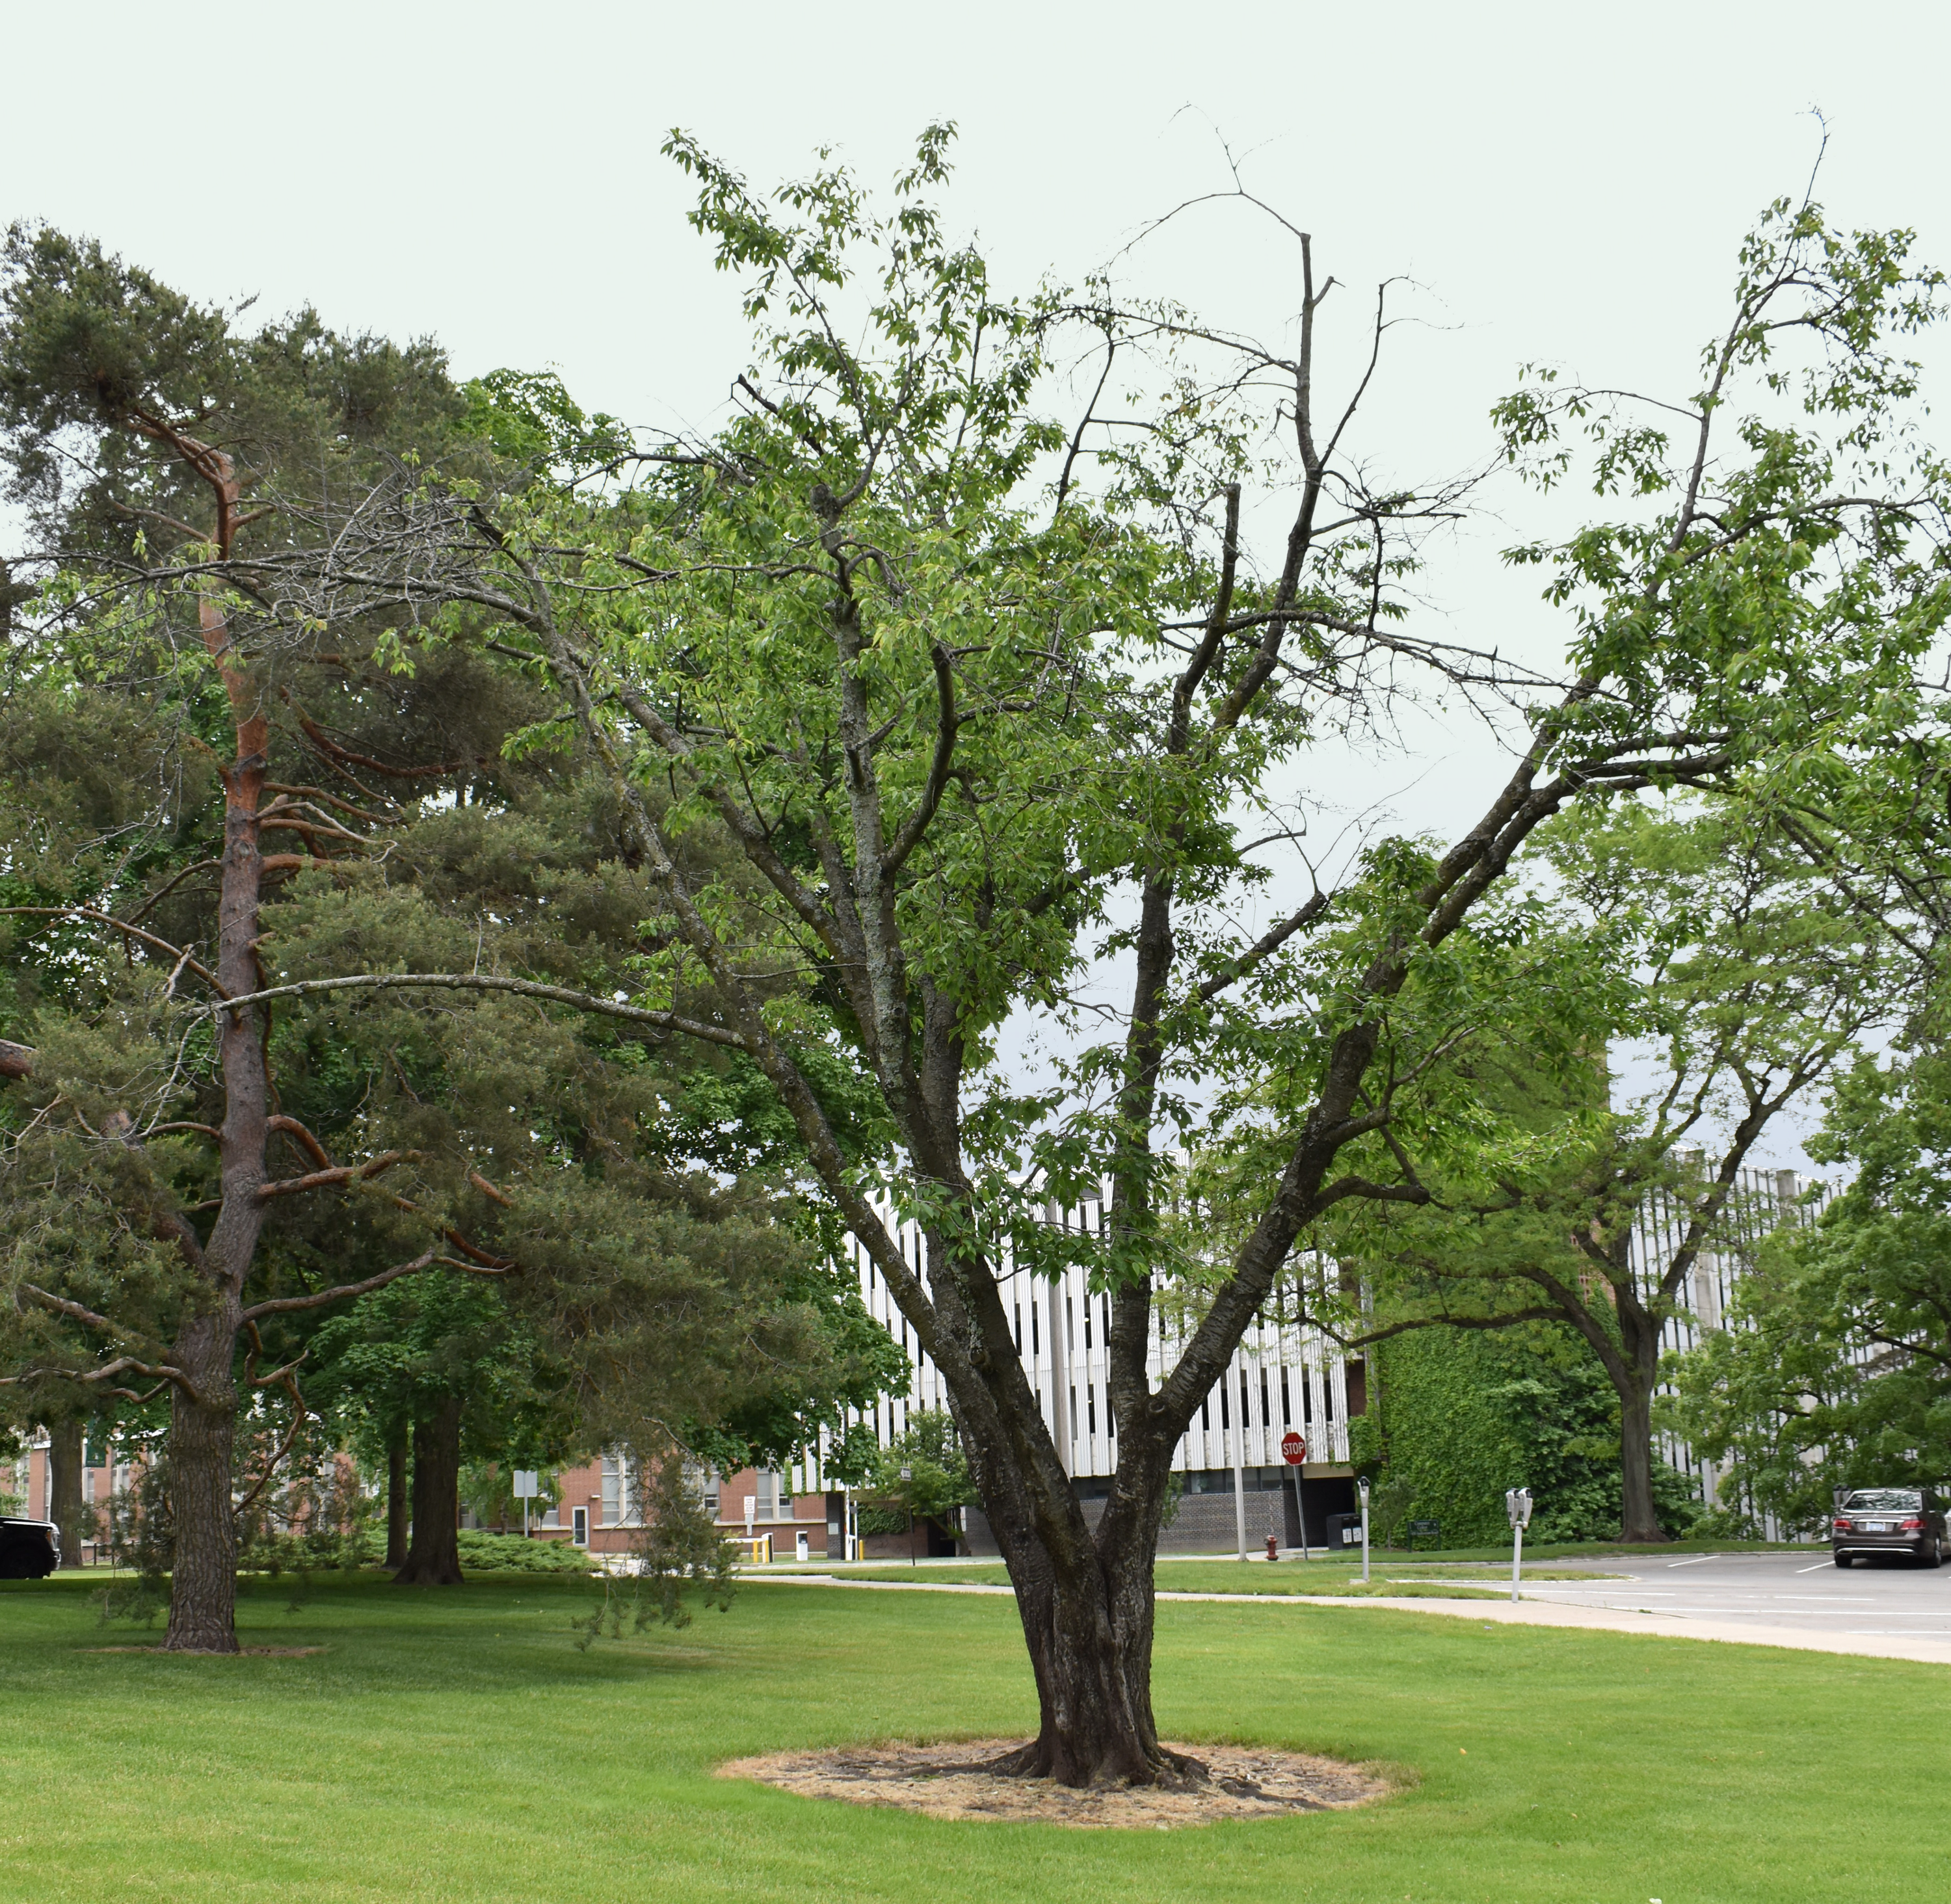 Prunus avium cherry tree on MSU's campus